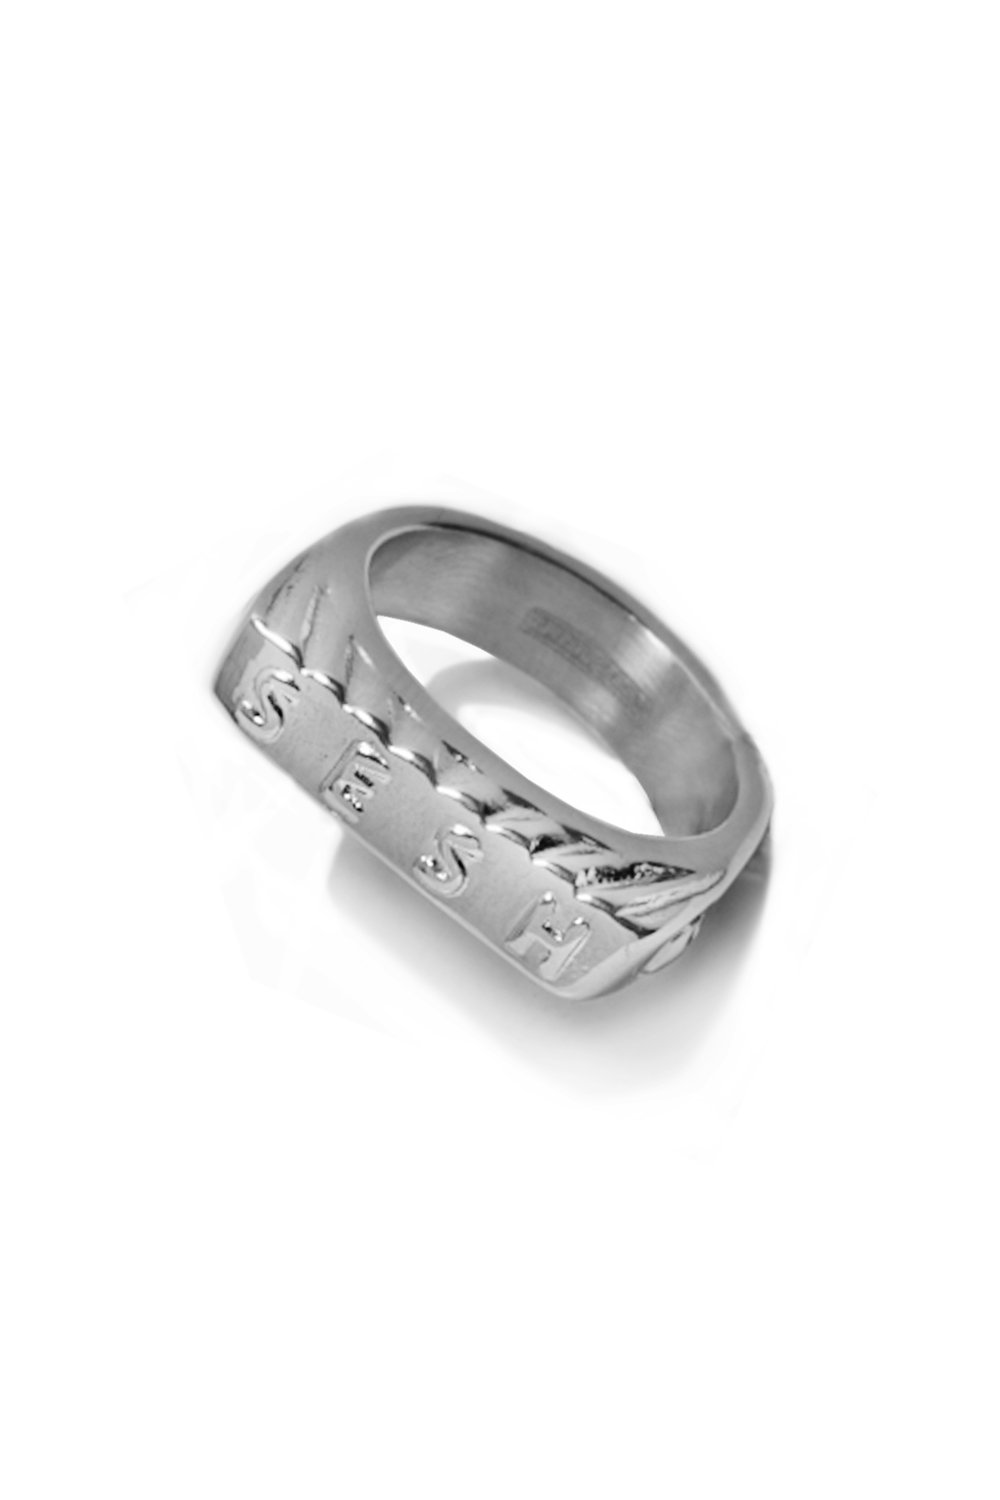 Image of "SeshCrown" ring 